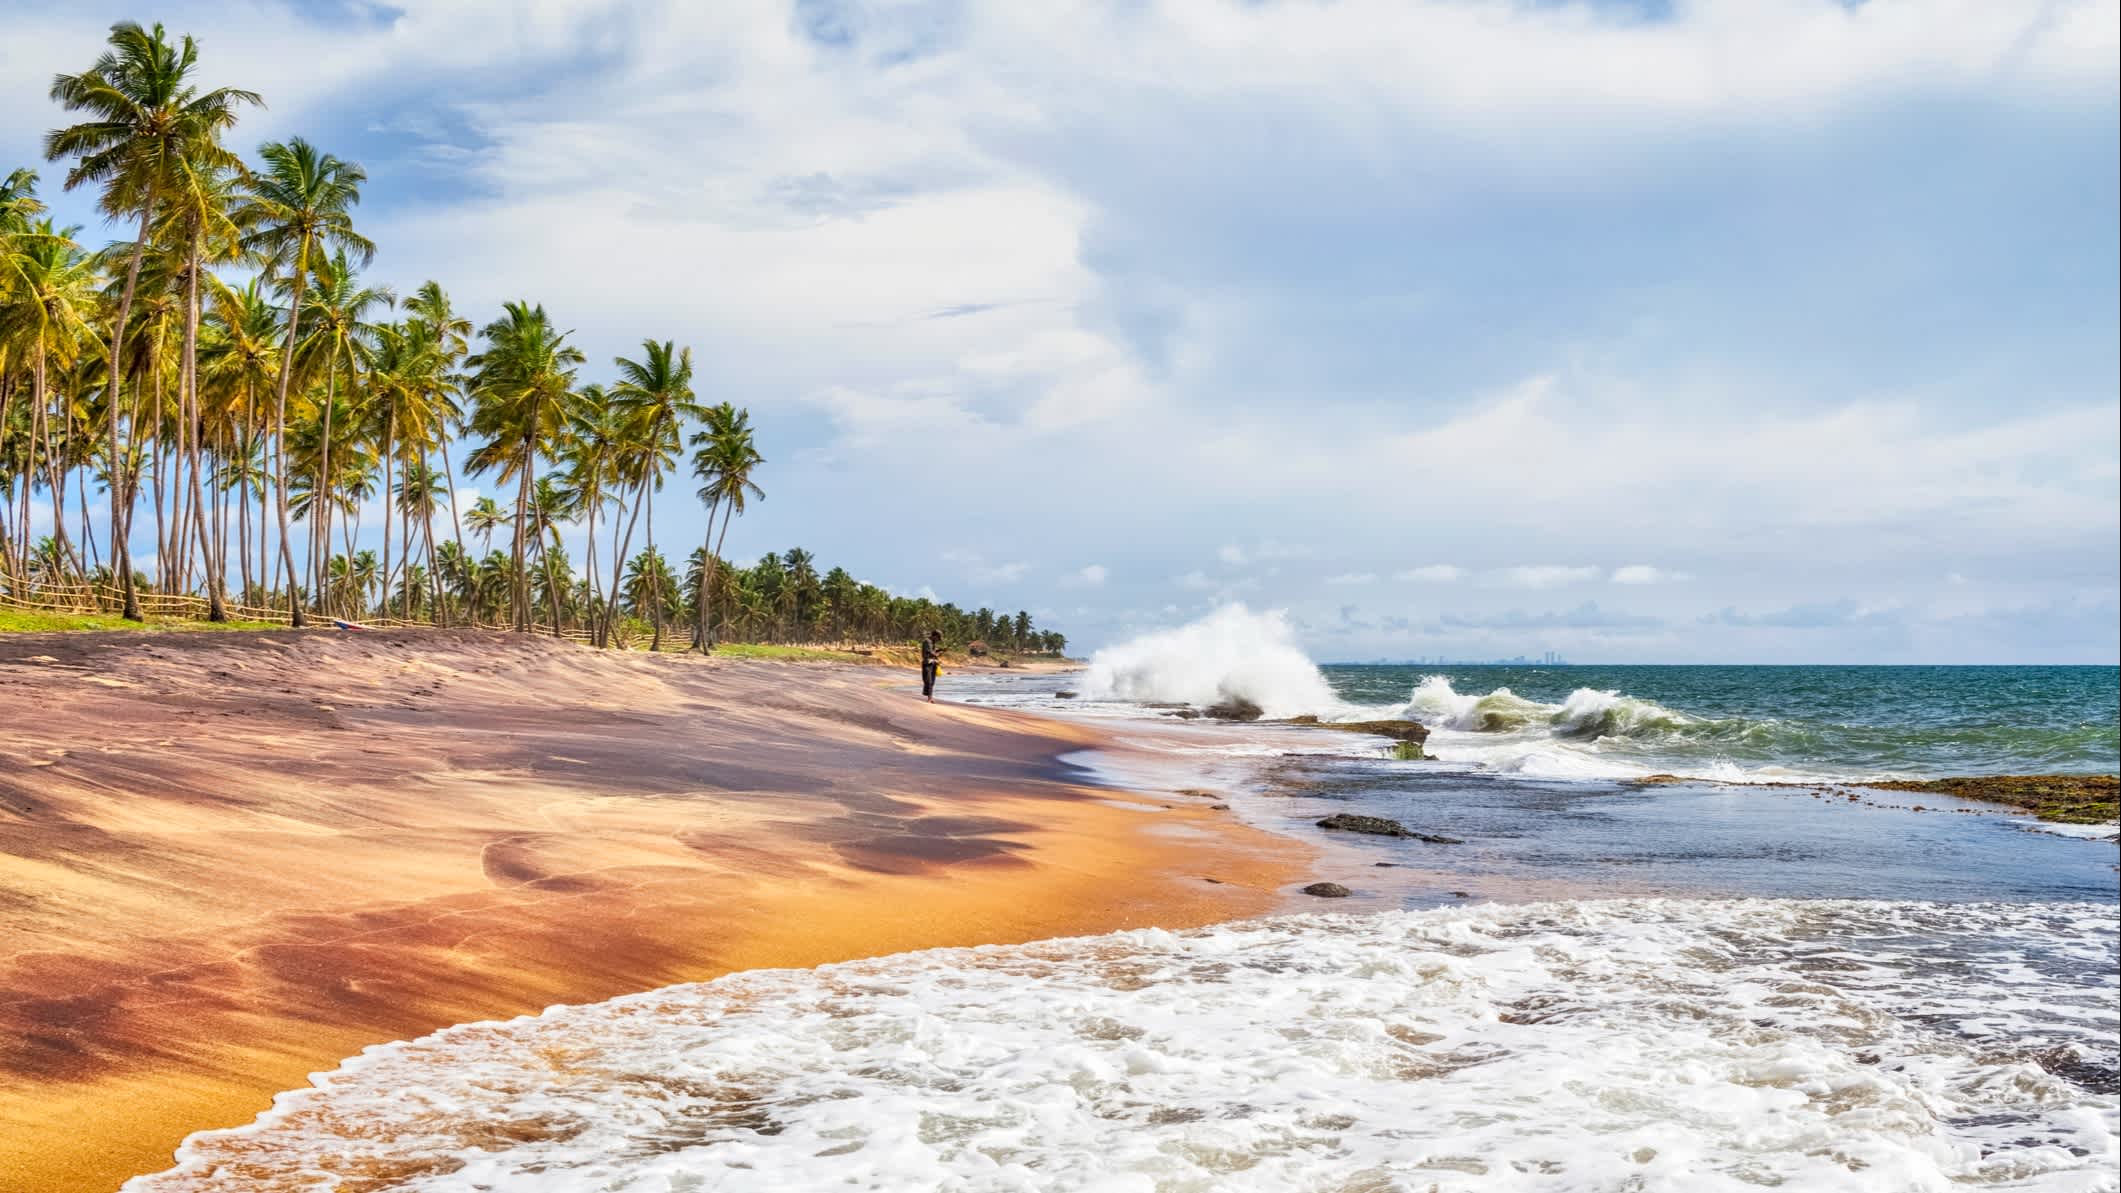 Personne sur le sable entouré de palmiers sur la plage naturelle de Negombo au Sri Lanka

